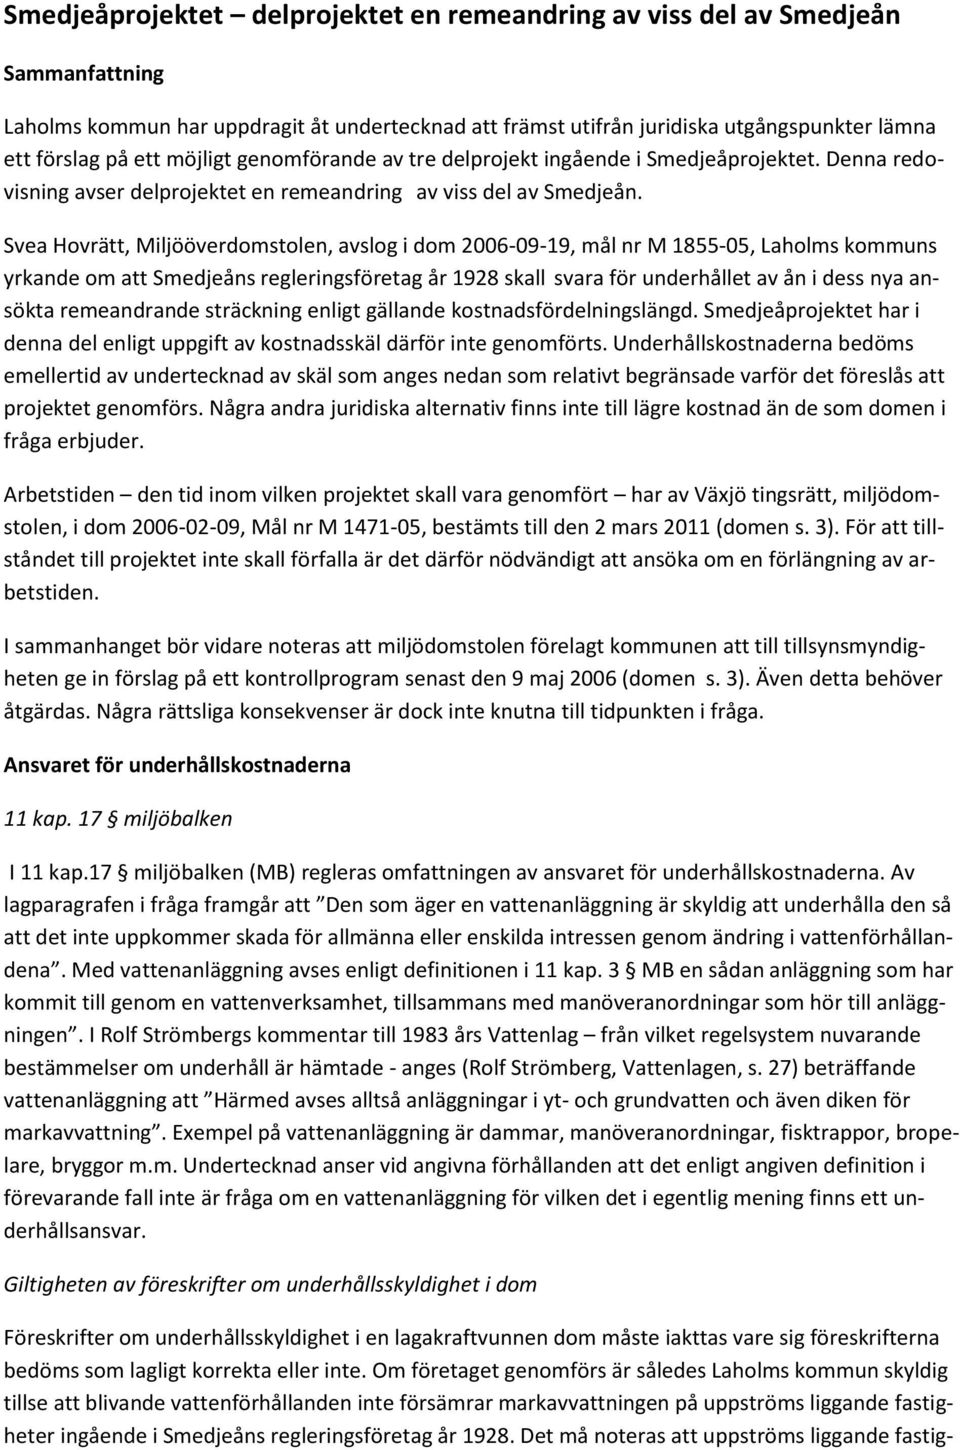 Svea Hovrätt, Miljööverdomstolen, avslog i dom 2006-09-19, mål nr M 1855-05, Laholms kommuns yrkande om att Smedjeåns regleringsföretag år 1928 skall svara för underhållet av ån i dess nya ansökta